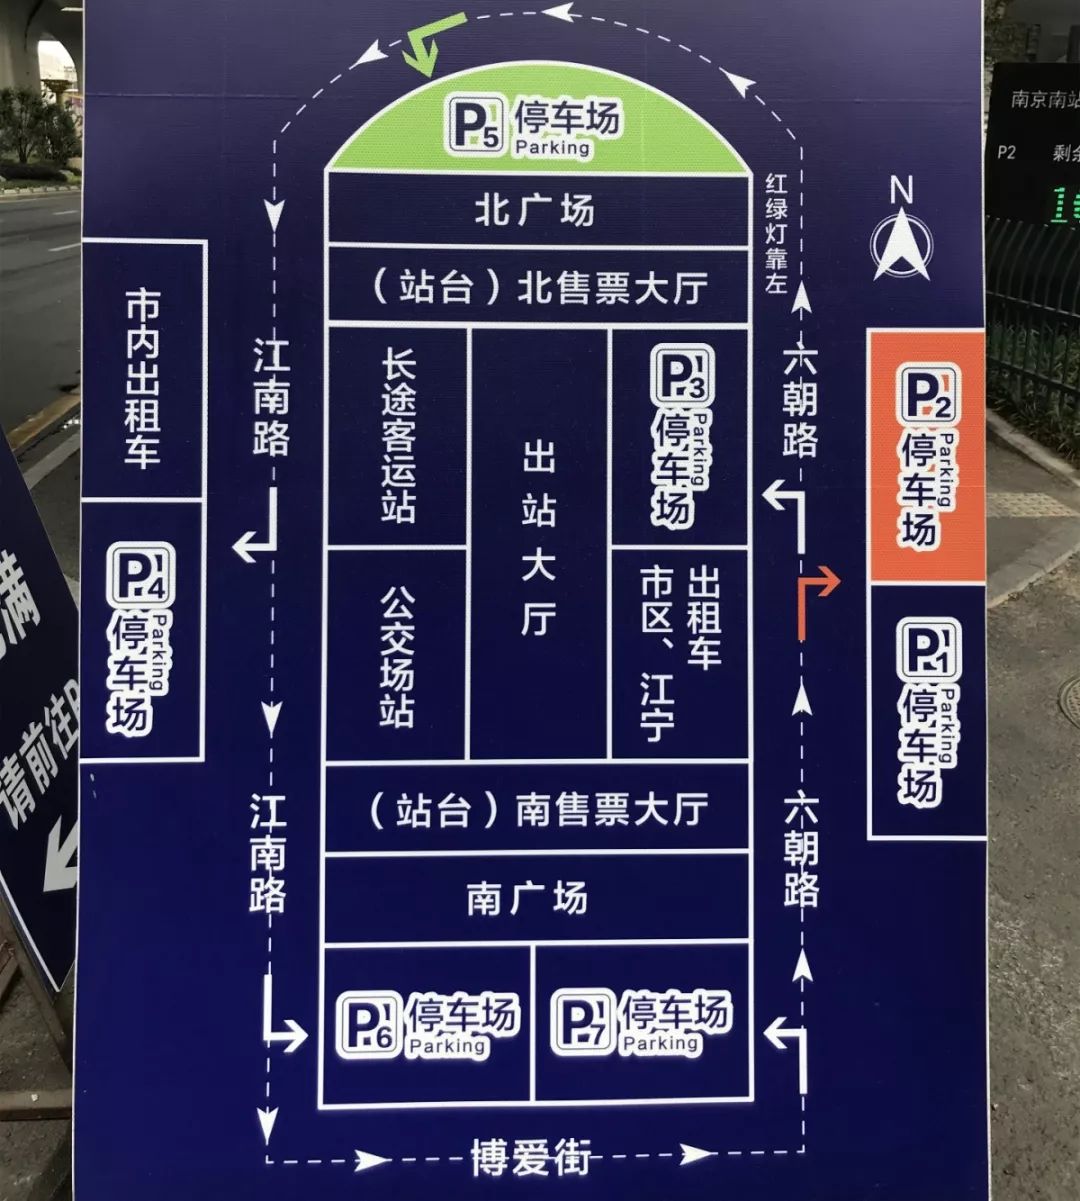 南京南站平面图站口图片